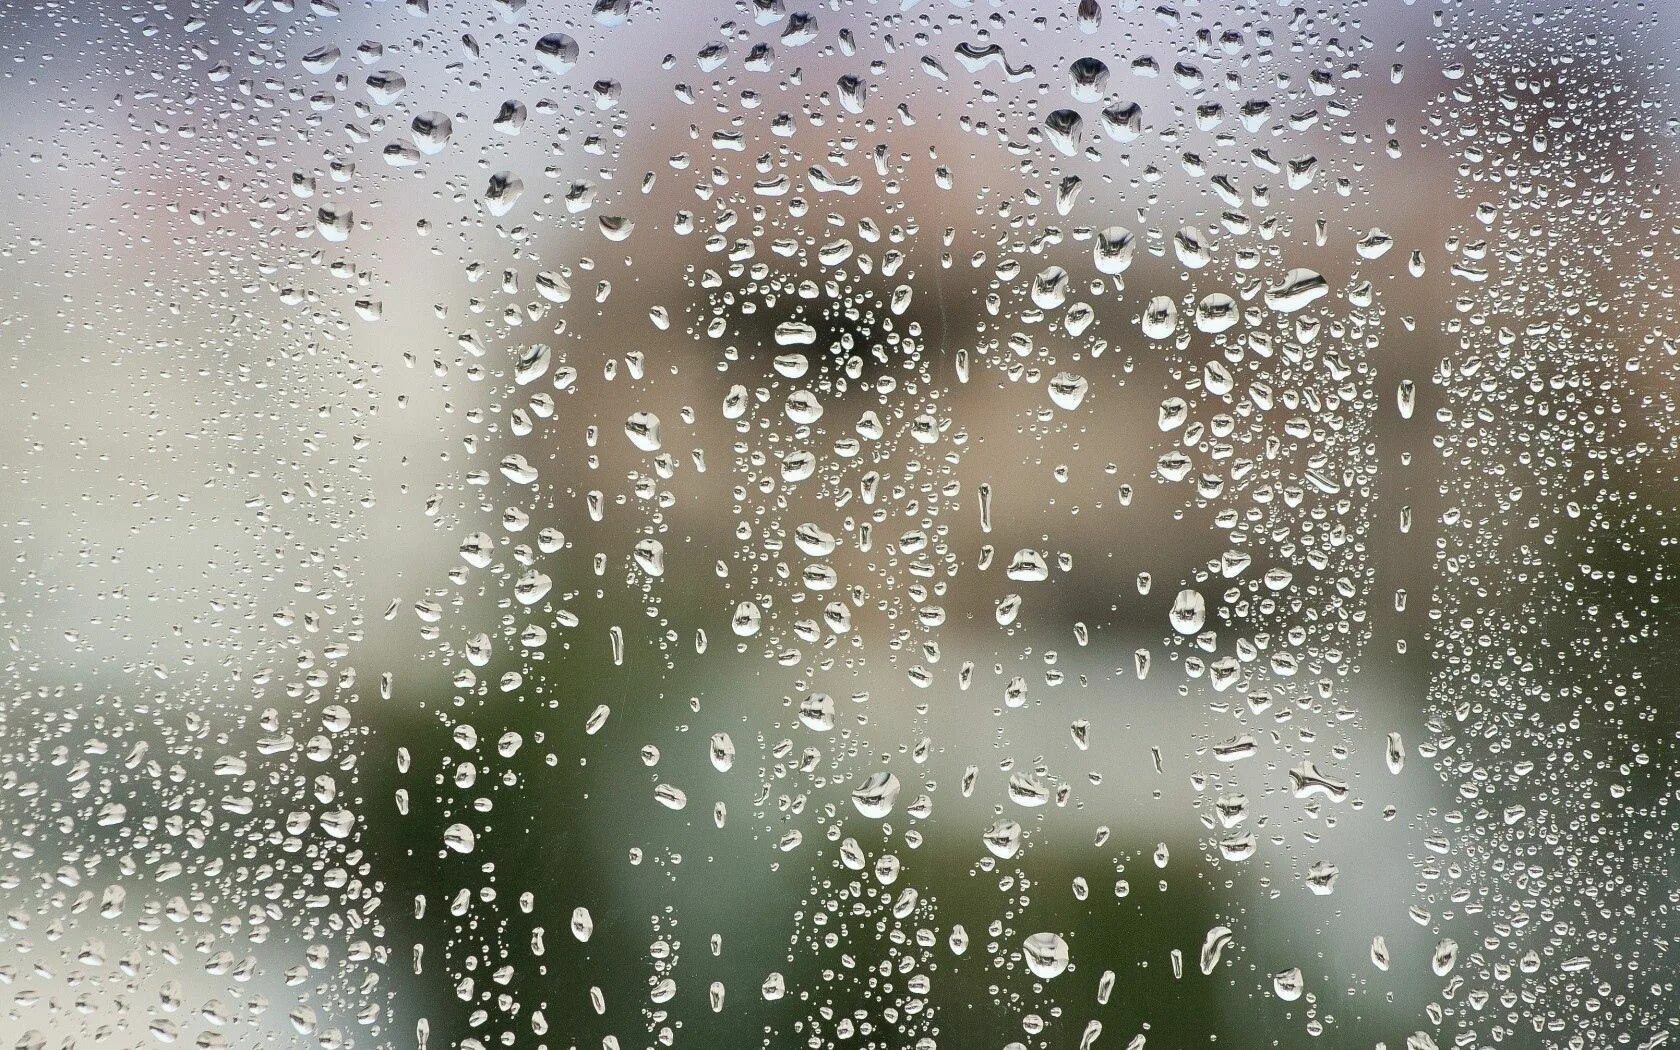 Едва заметно будто капли воды блестели. Капли на стекле. Капли дождя. Стекло с эффектом дождя. Запотевшее стекло.